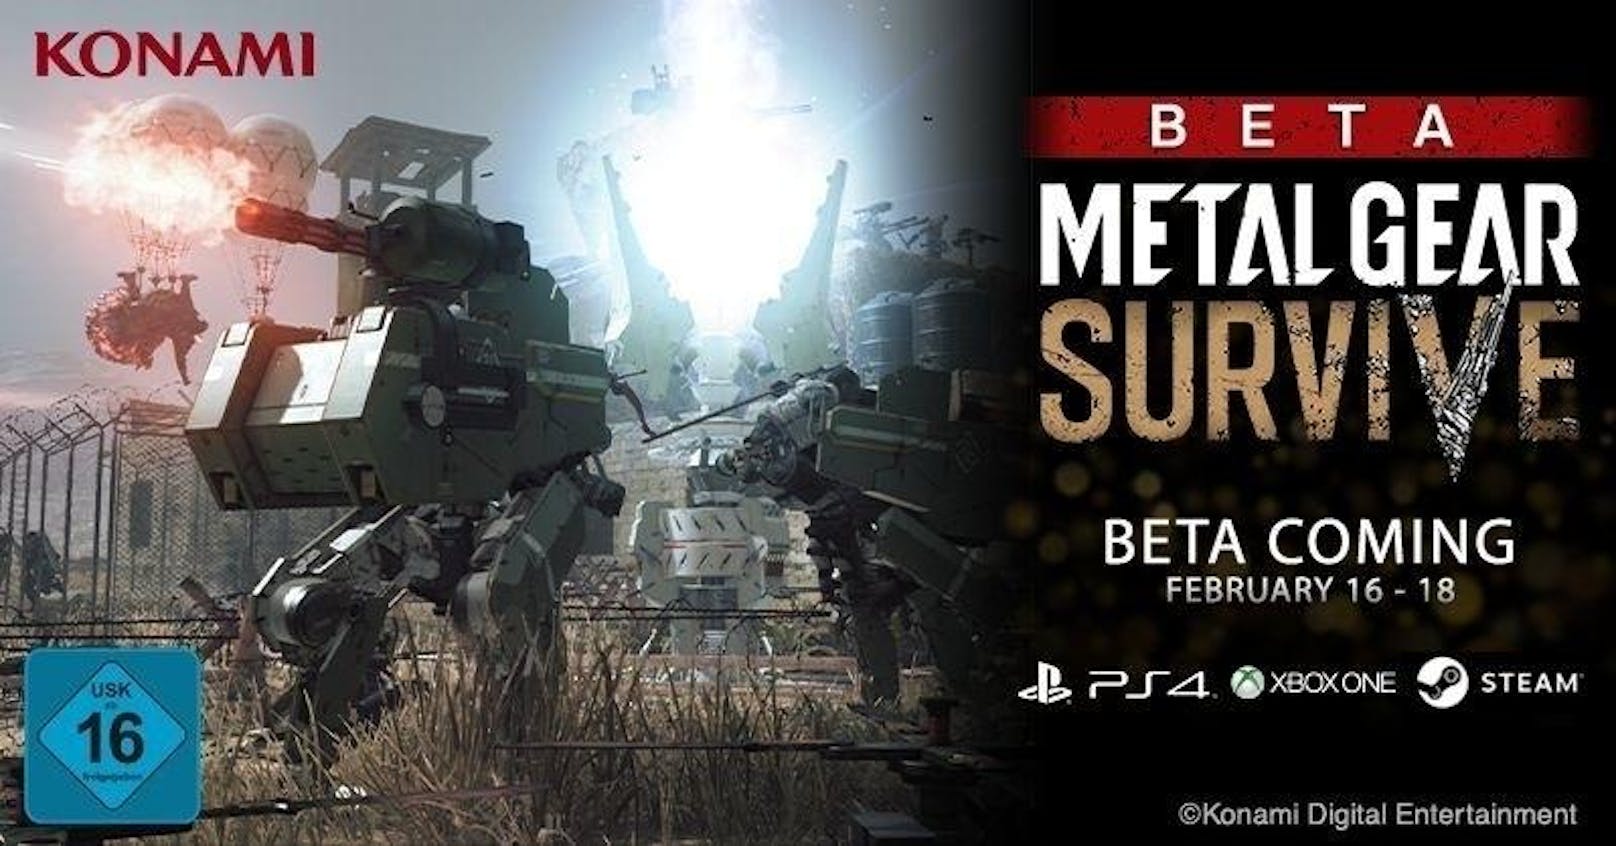 Konami startet eine zweite offene Metal Gear Survive für den 16. Februar. Diesmal können nicht nur Konsolen-Spieler auf PlayStation 4 oder Xbox One online den Koop-Modus über drei Tage (16. bis 18. Februar) ausprobieren, sondern auch interessierte PC-User über Steam. Auf zwei Karten sind verschiedene Schwierigkeitsgrade und besondere tägliche Missionen verfügbar.